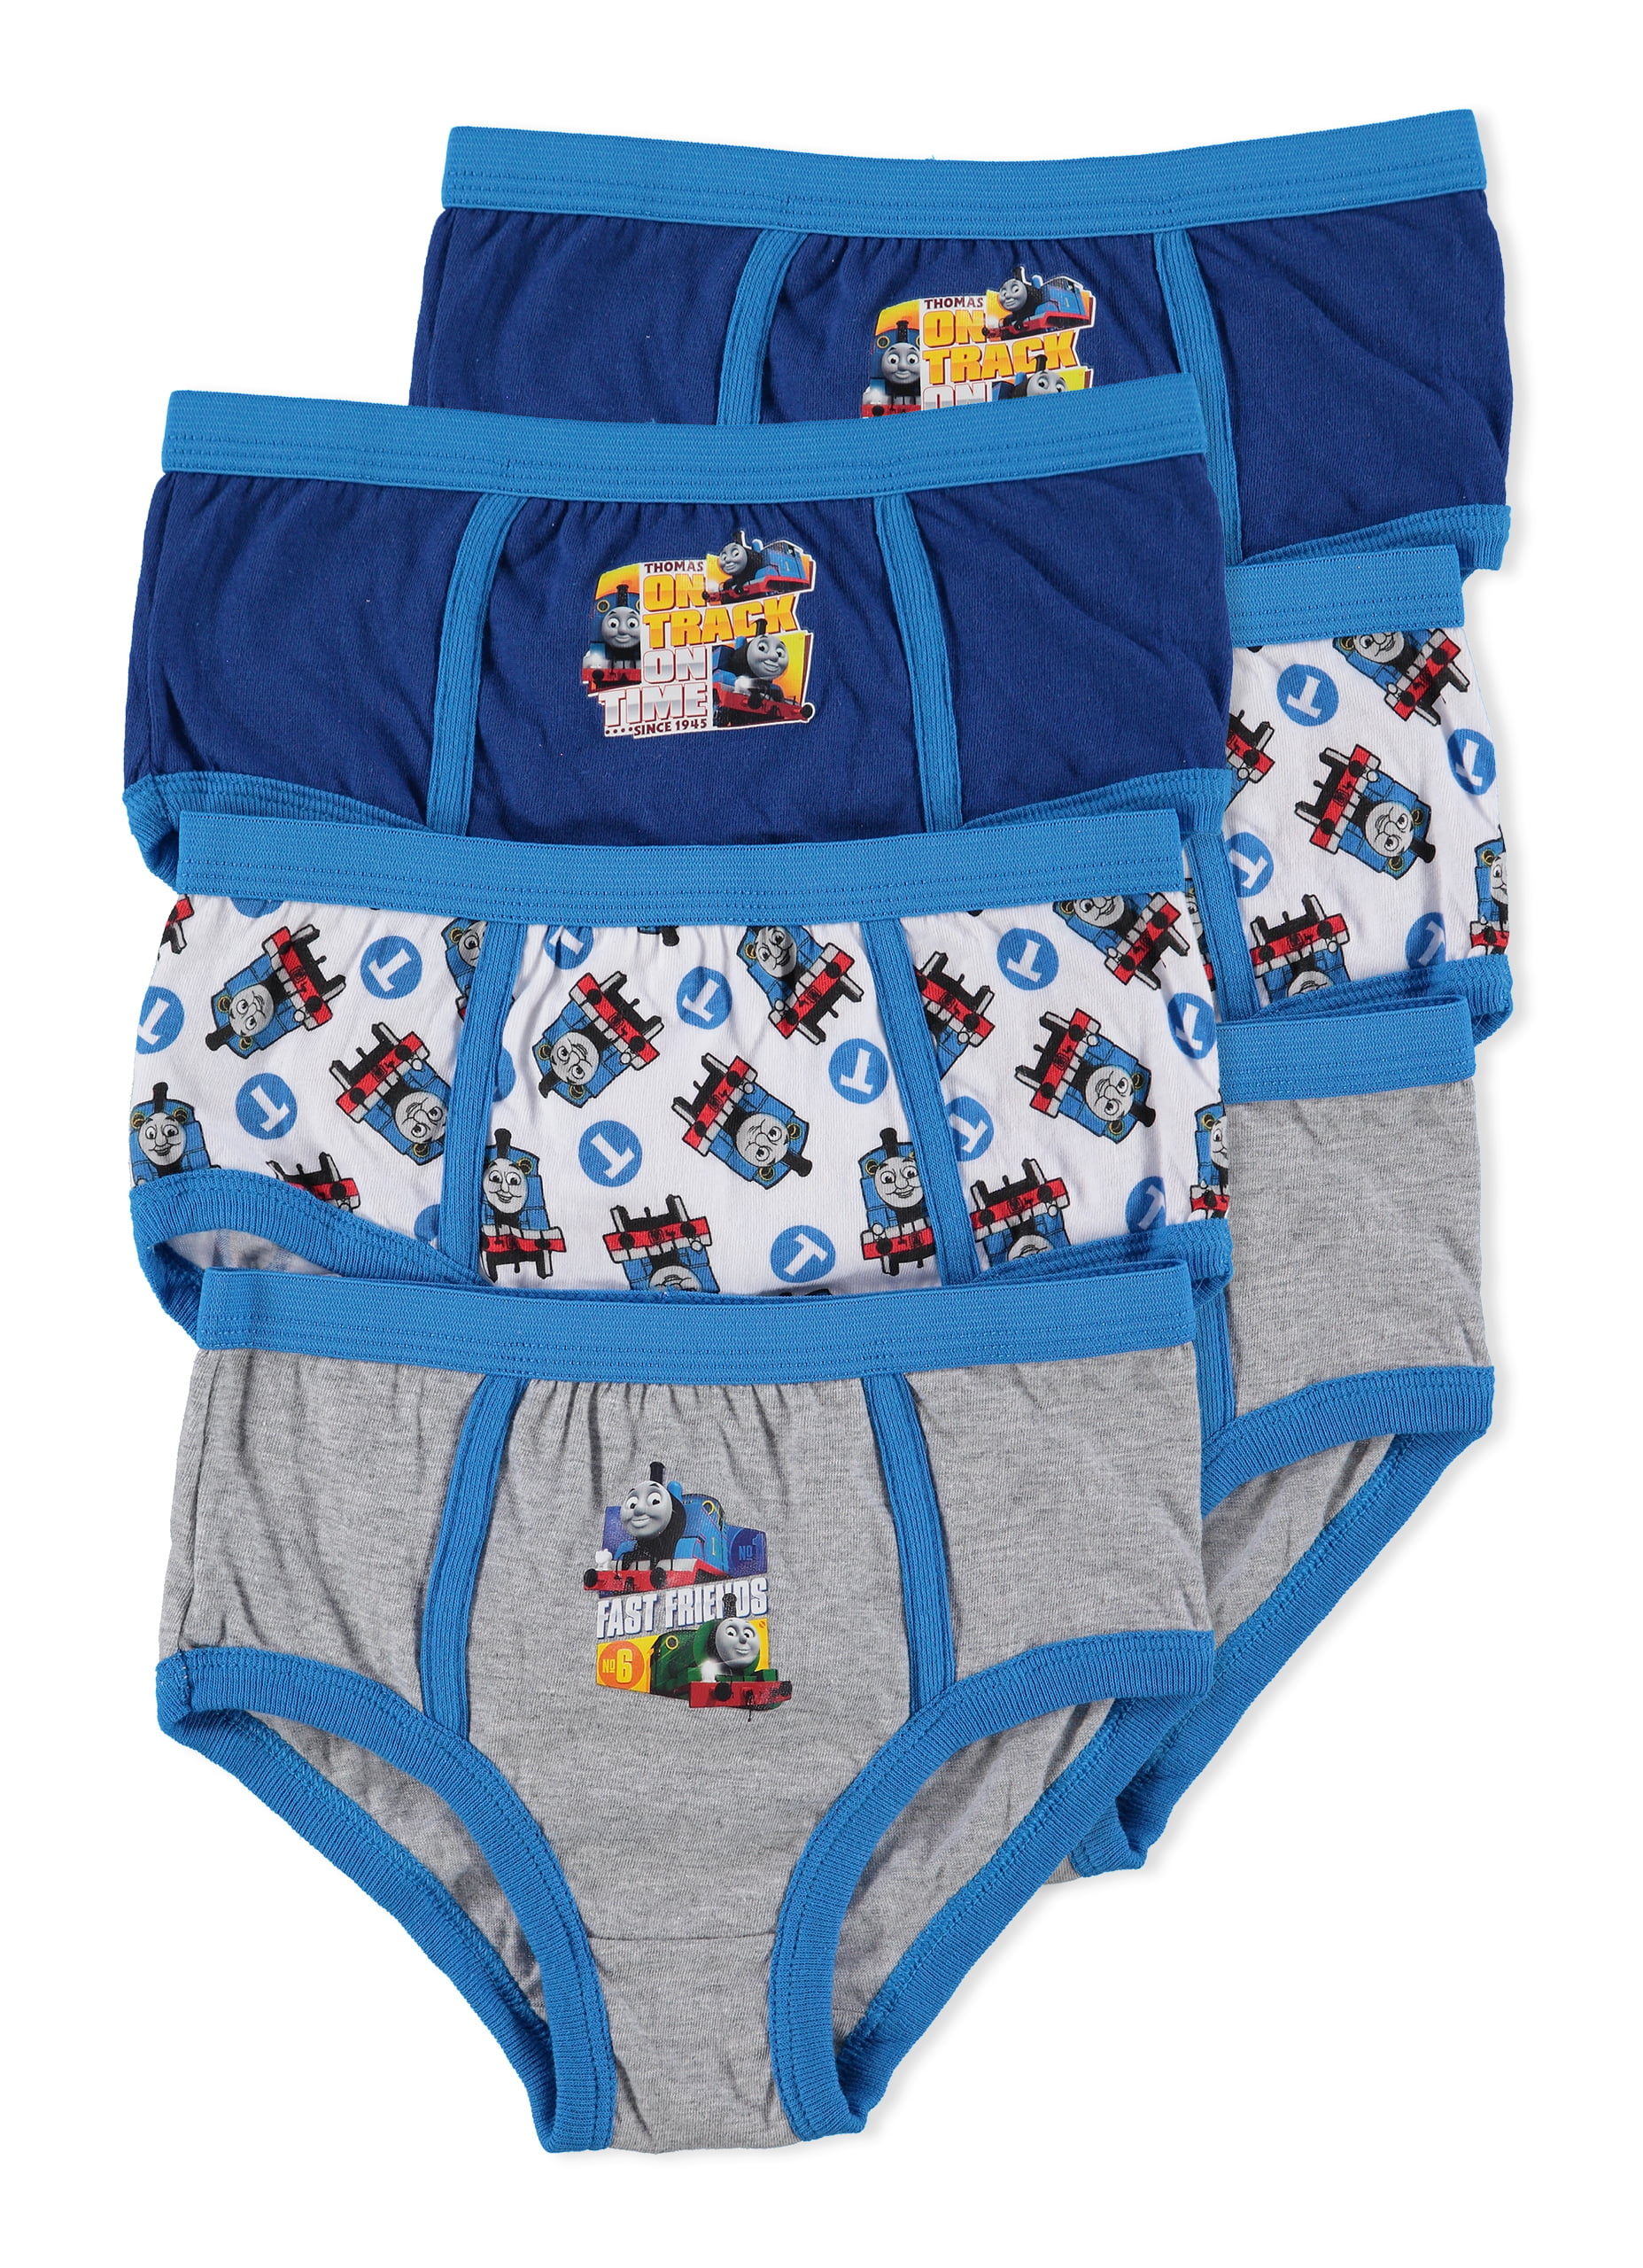 Jellifish Kids Transformers Boys Underwear Briefs 6-Pack Size 6X